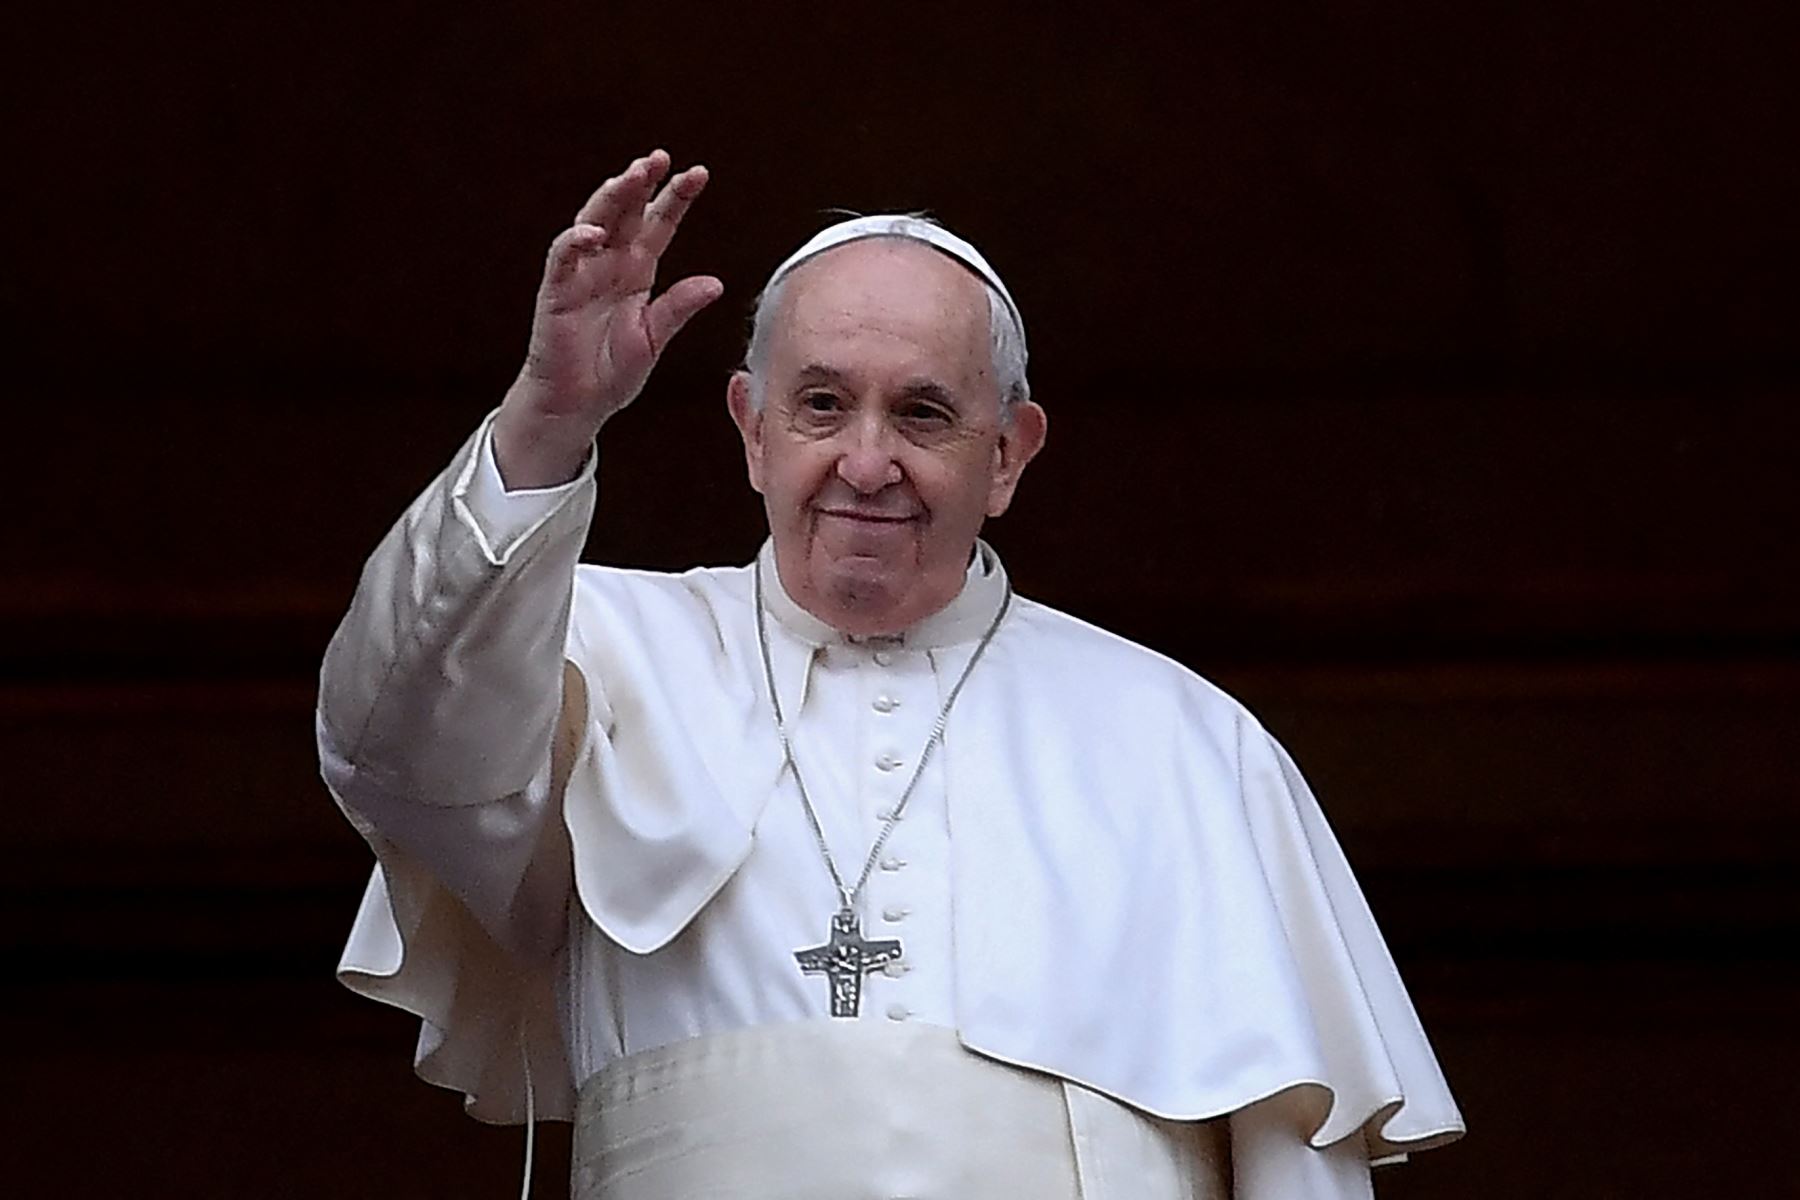 El papa Francisco cancela visita al Portal de belén por la pandemia